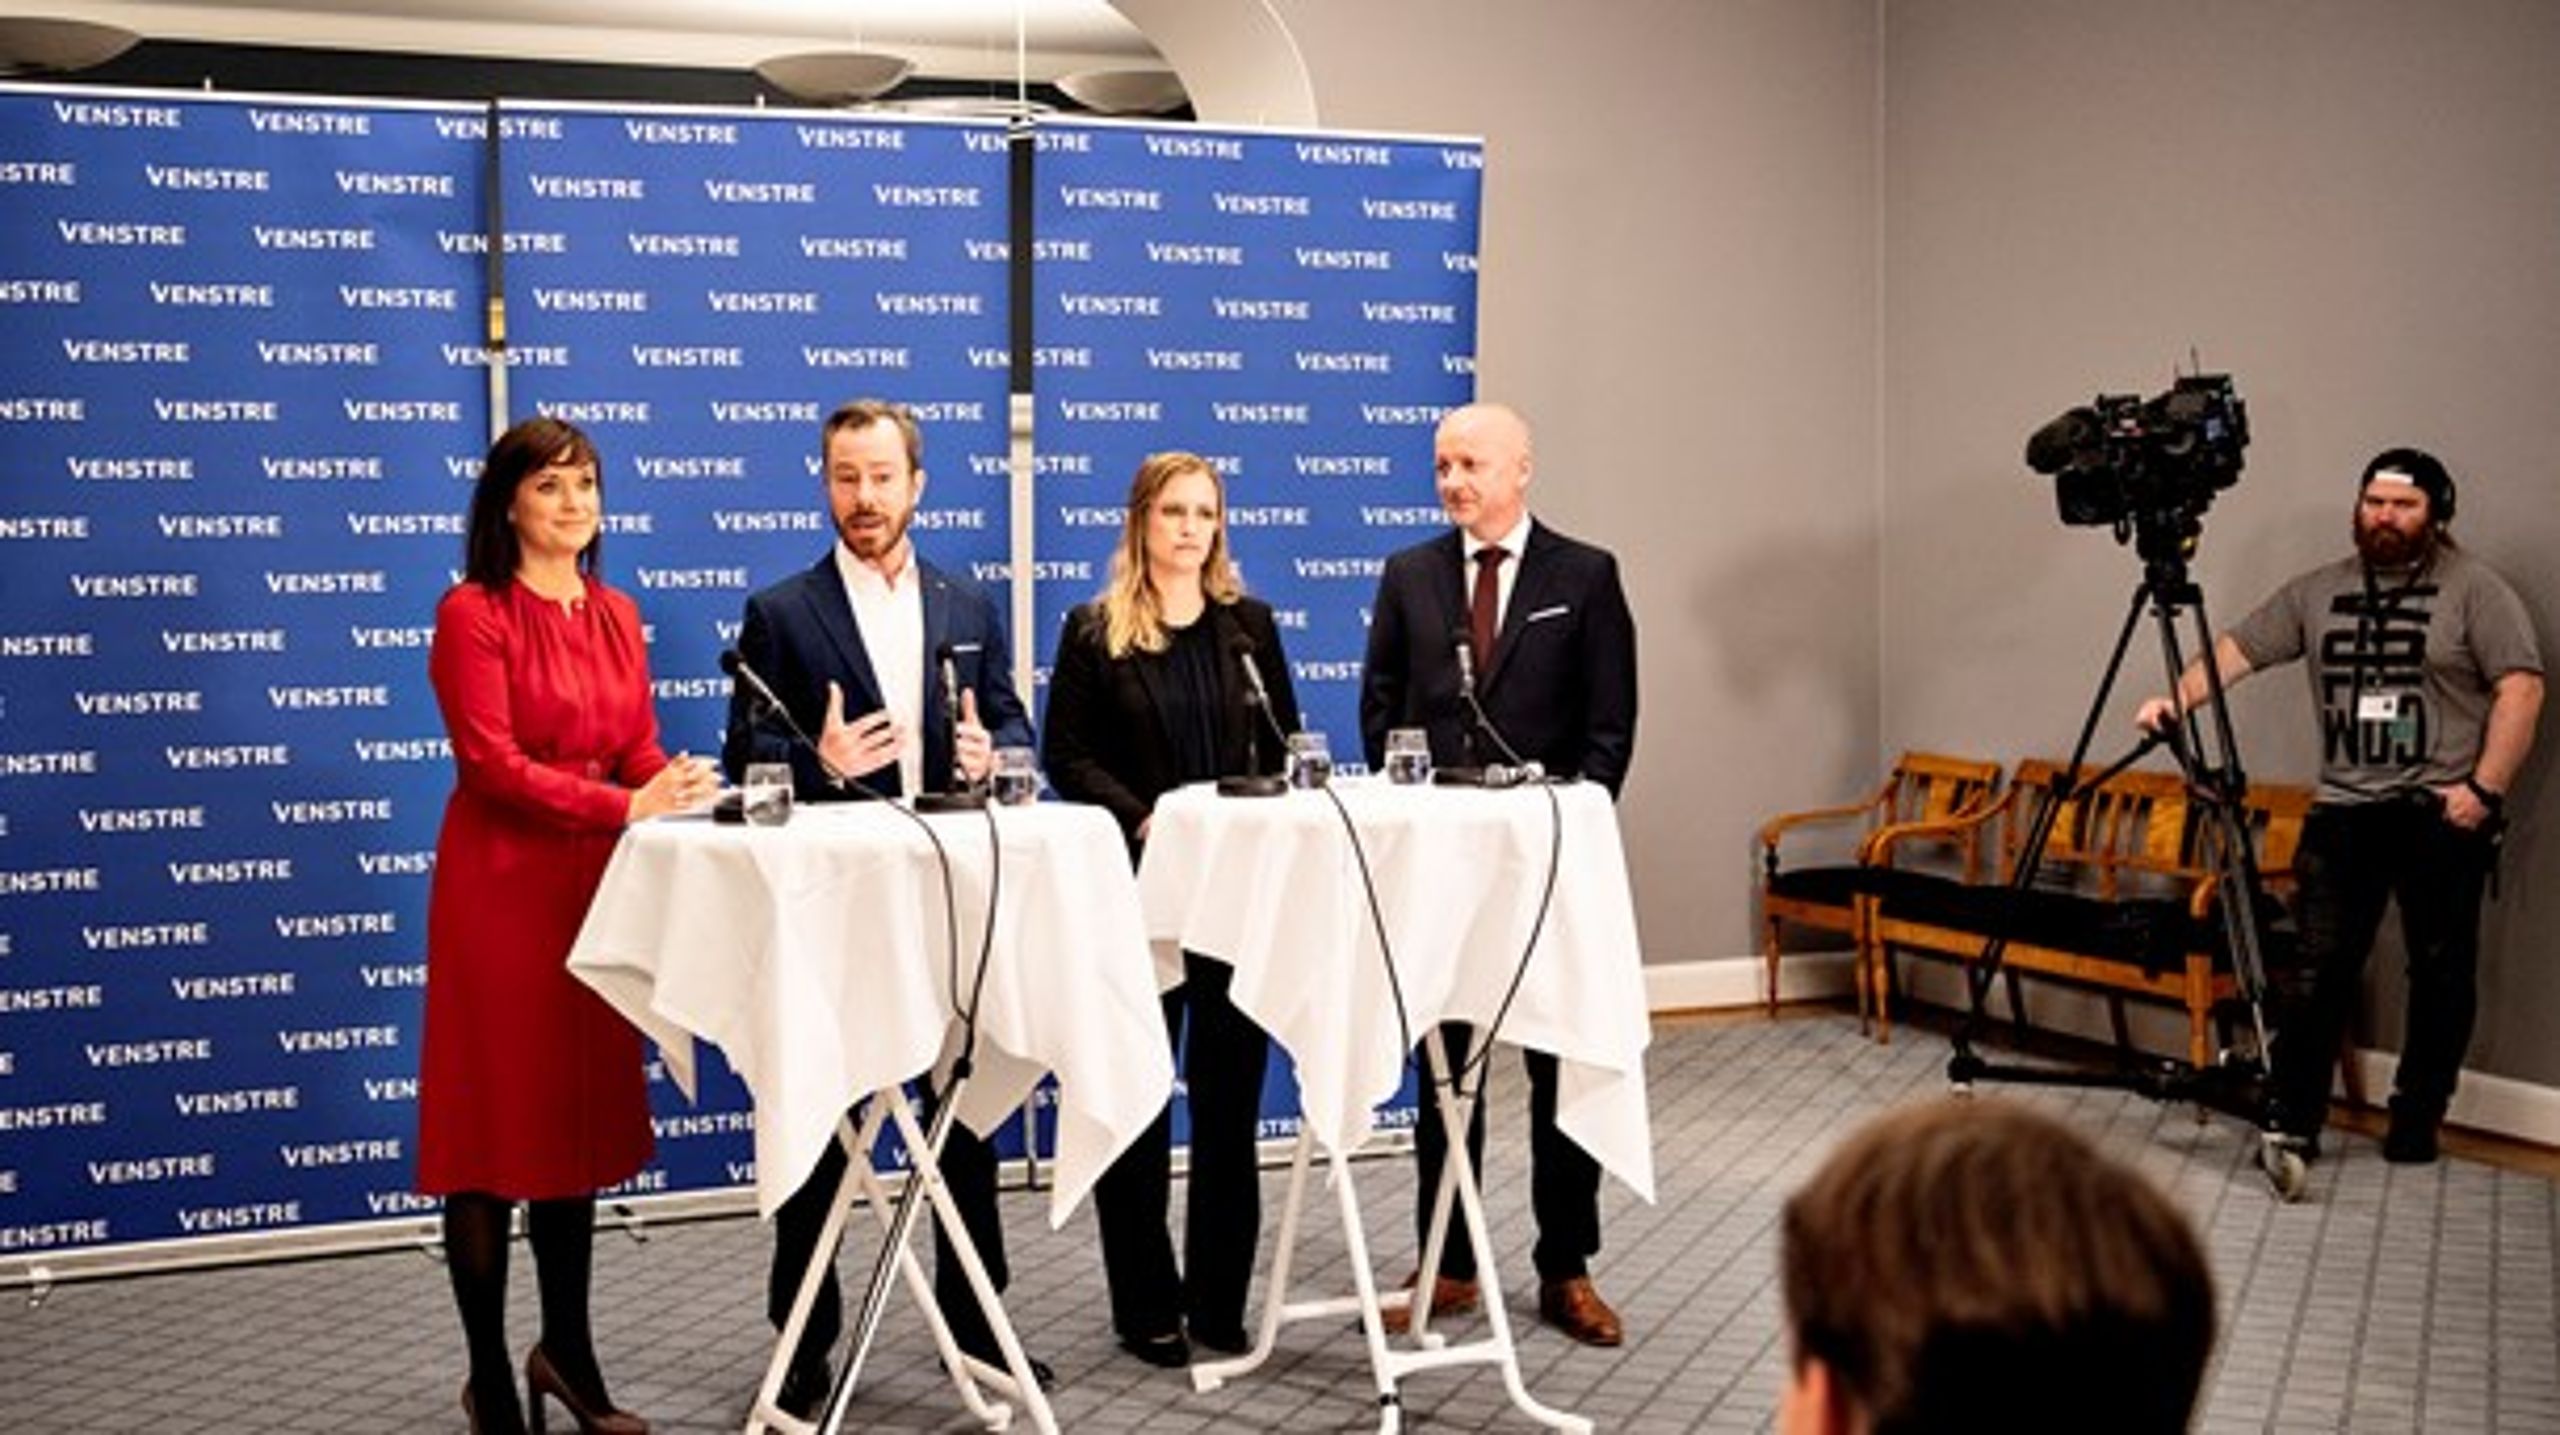 Venstre præsenterede søndag et sundhedspolitisk udspil, som skal danne grundlag for partiets position i de kommende forhandlinger om en sundhedsaftale.